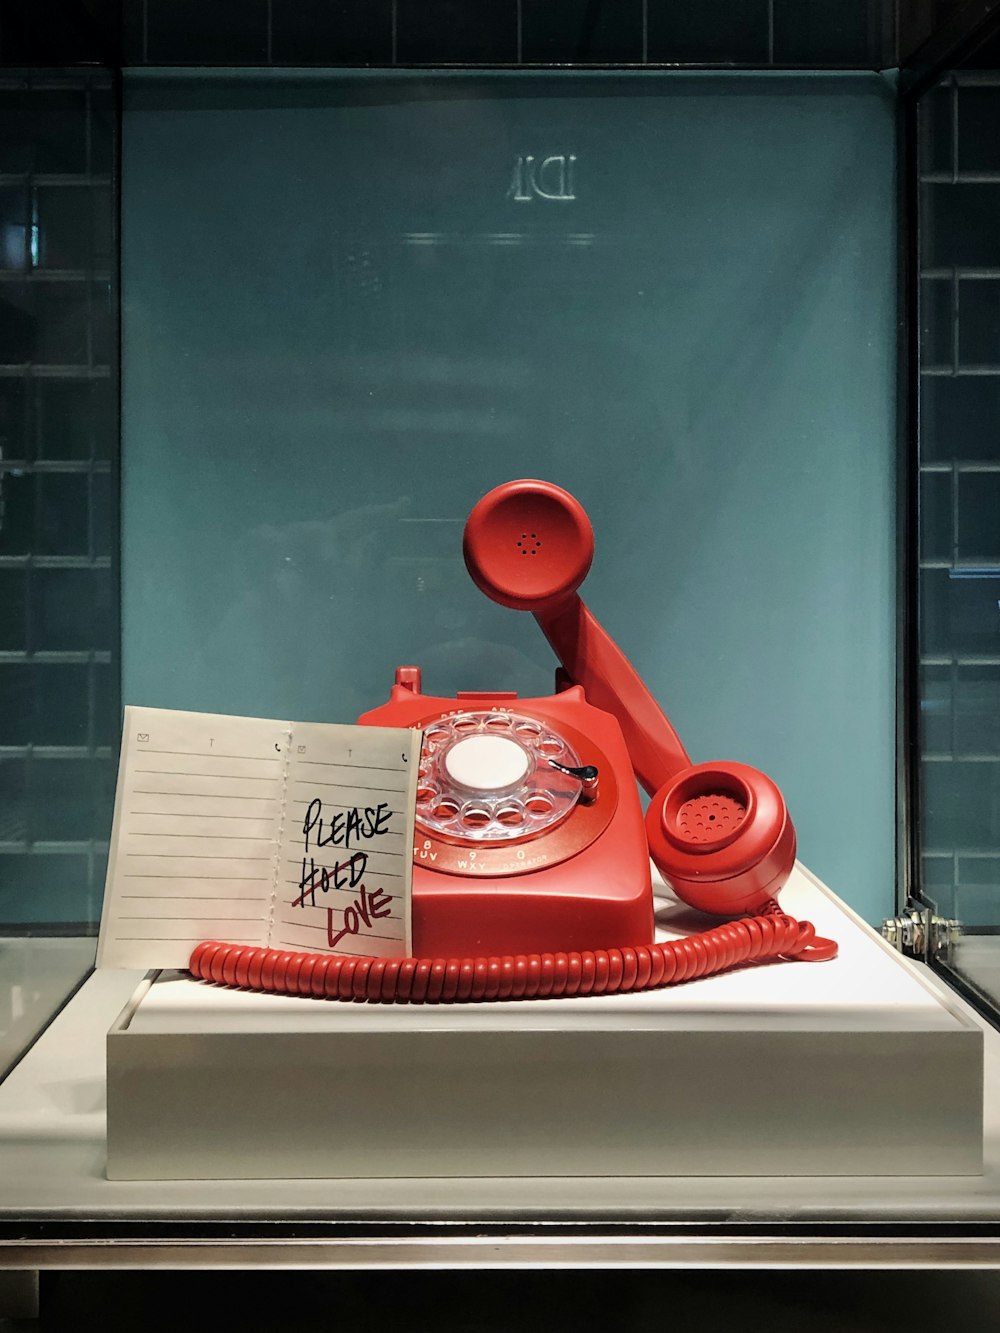 telefone rotativo vermelho e branco na mesa branca